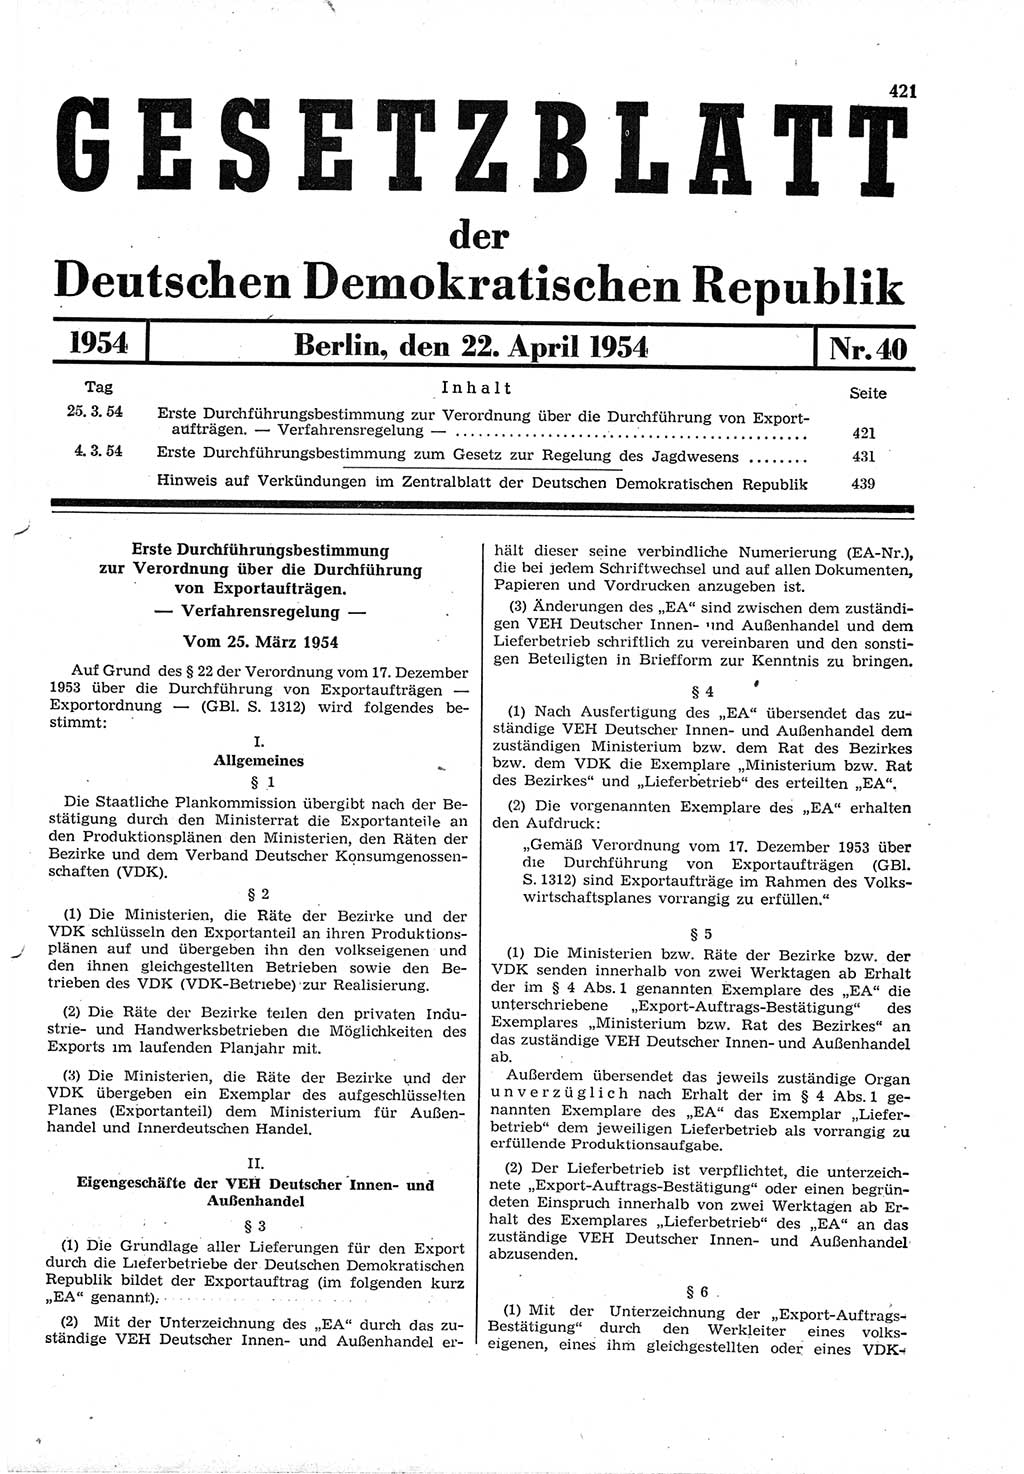 Gesetzblatt (GBl.) der Deutschen Demokratischen Republik (DDR) 1954, Seite 421 (GBl. DDR 1954, S. 421)